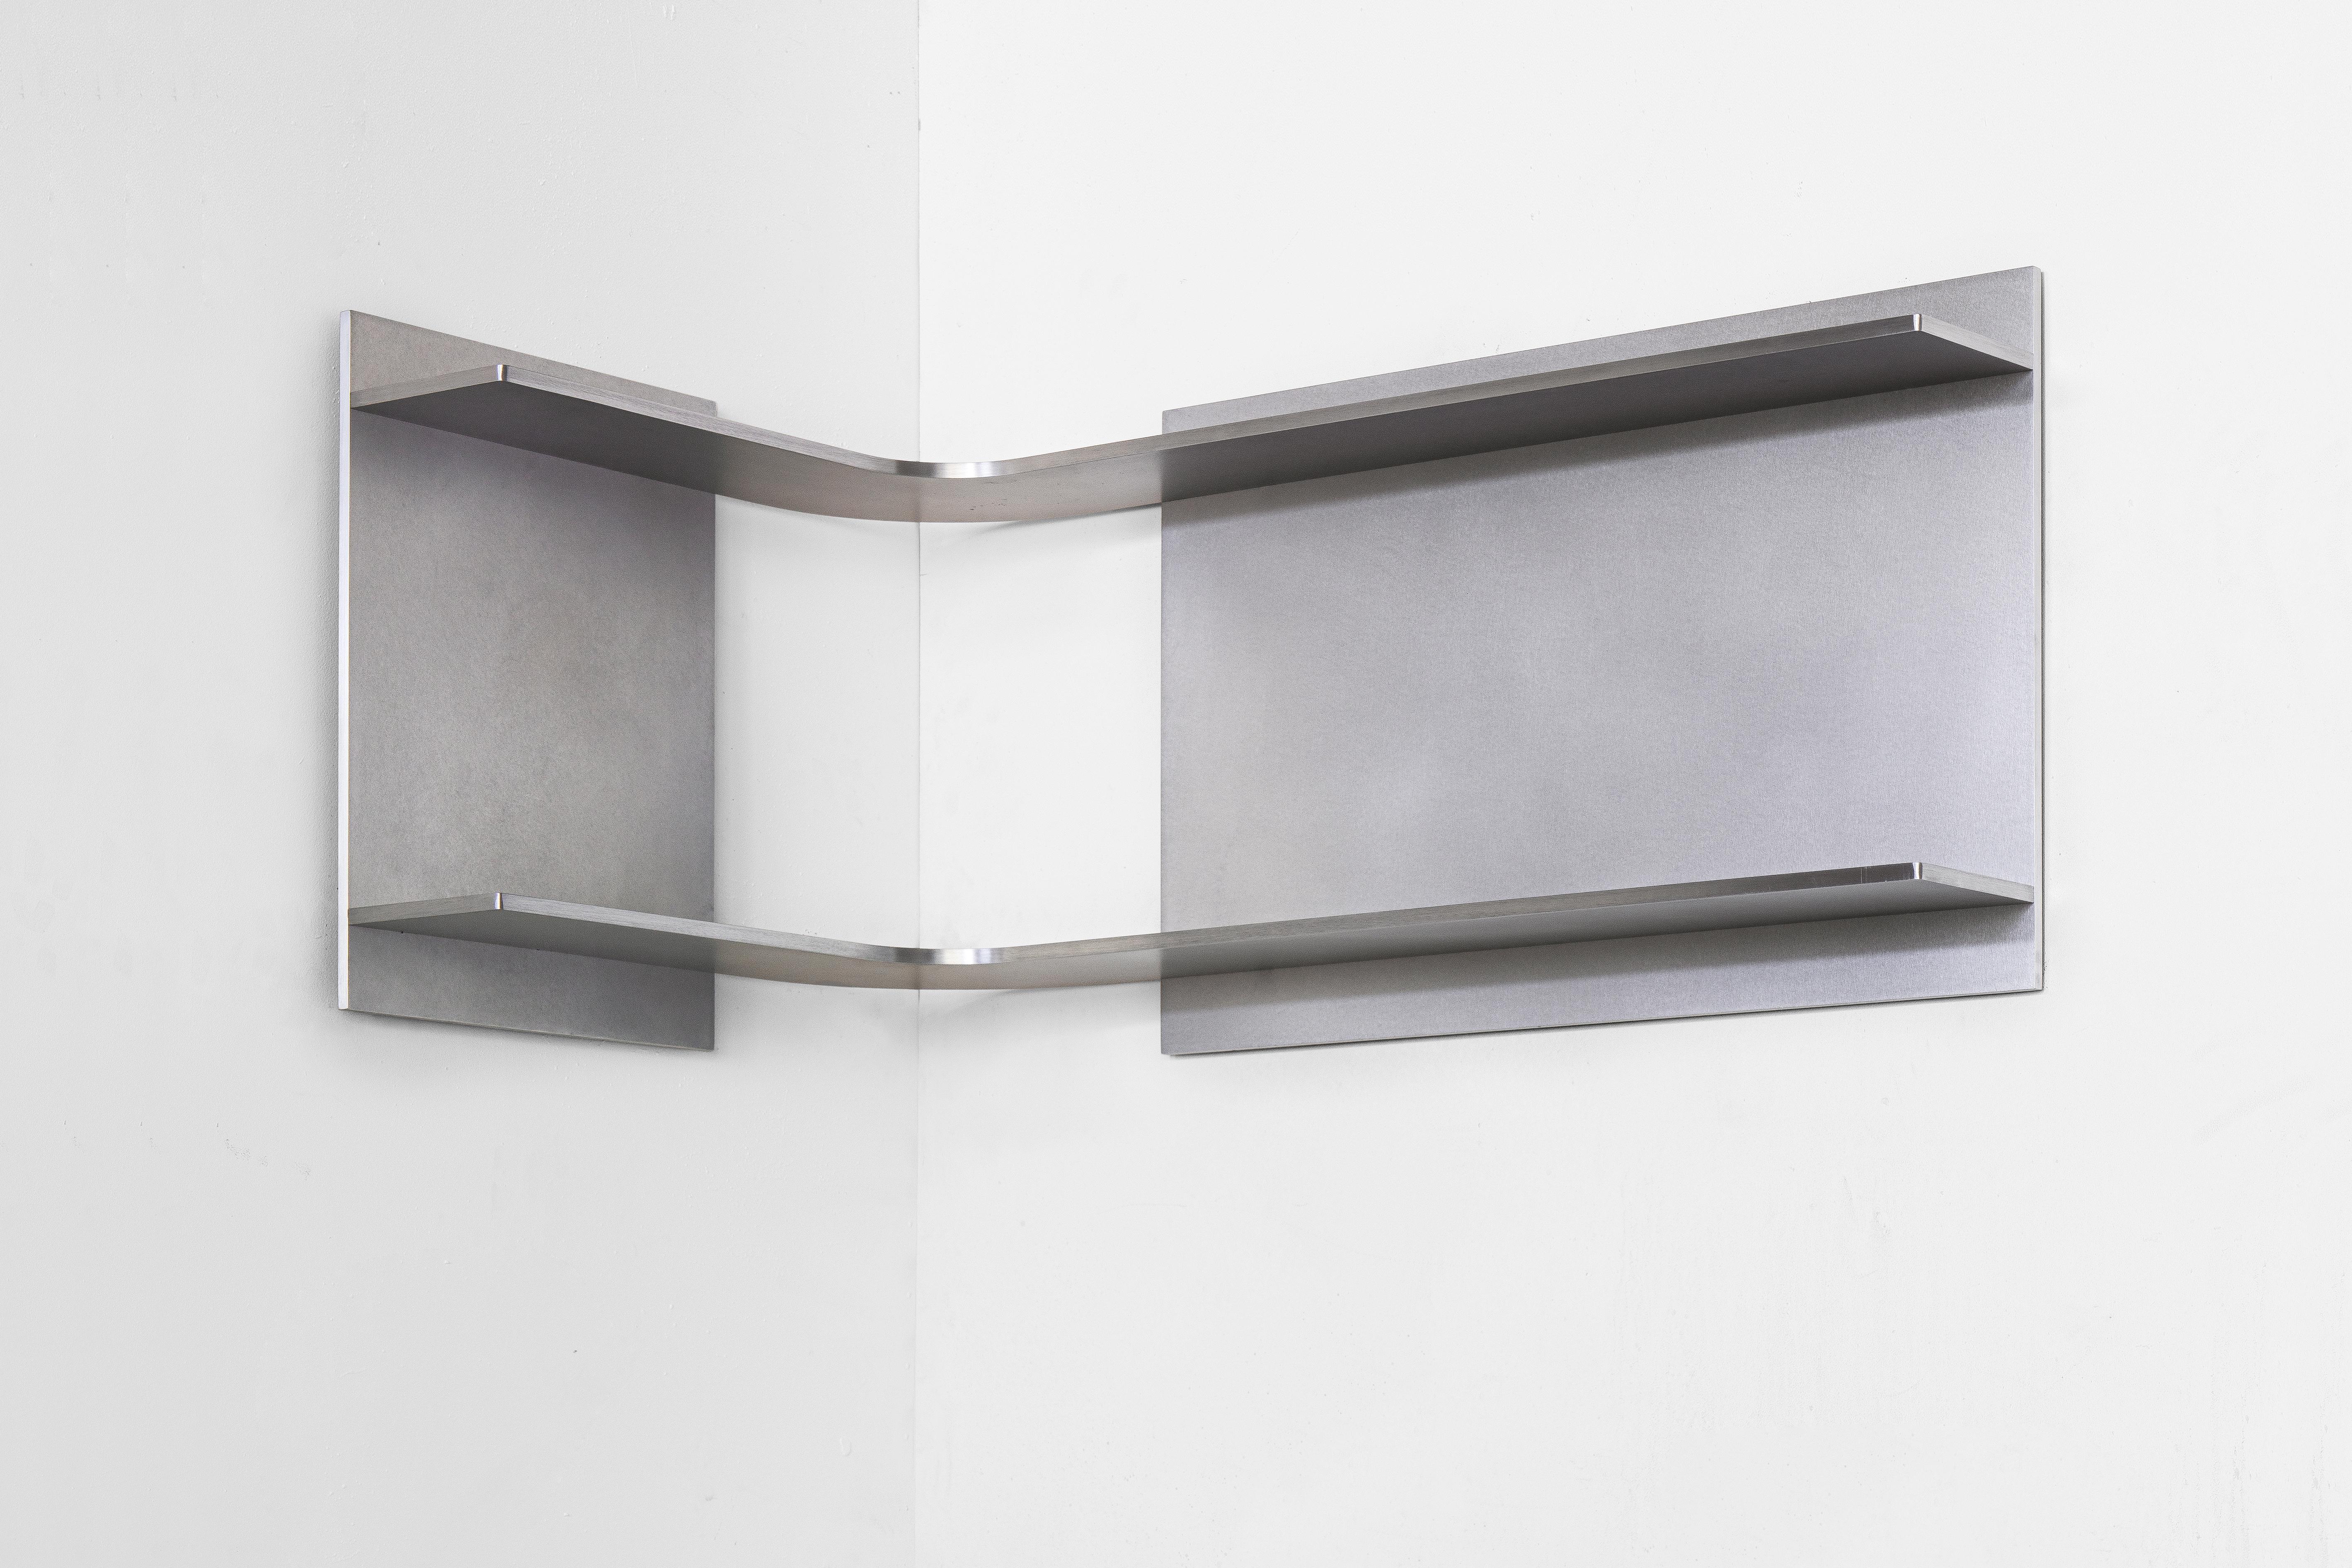 L'étagère d'angle est conçue et produite par Johan Viladrich dans son atelier du sud de la France. À la fois fonctionnelle et sculpturale, cette pièce utilise les murs pour créer une exposition unique. Le design est minimal et concentre l'attention